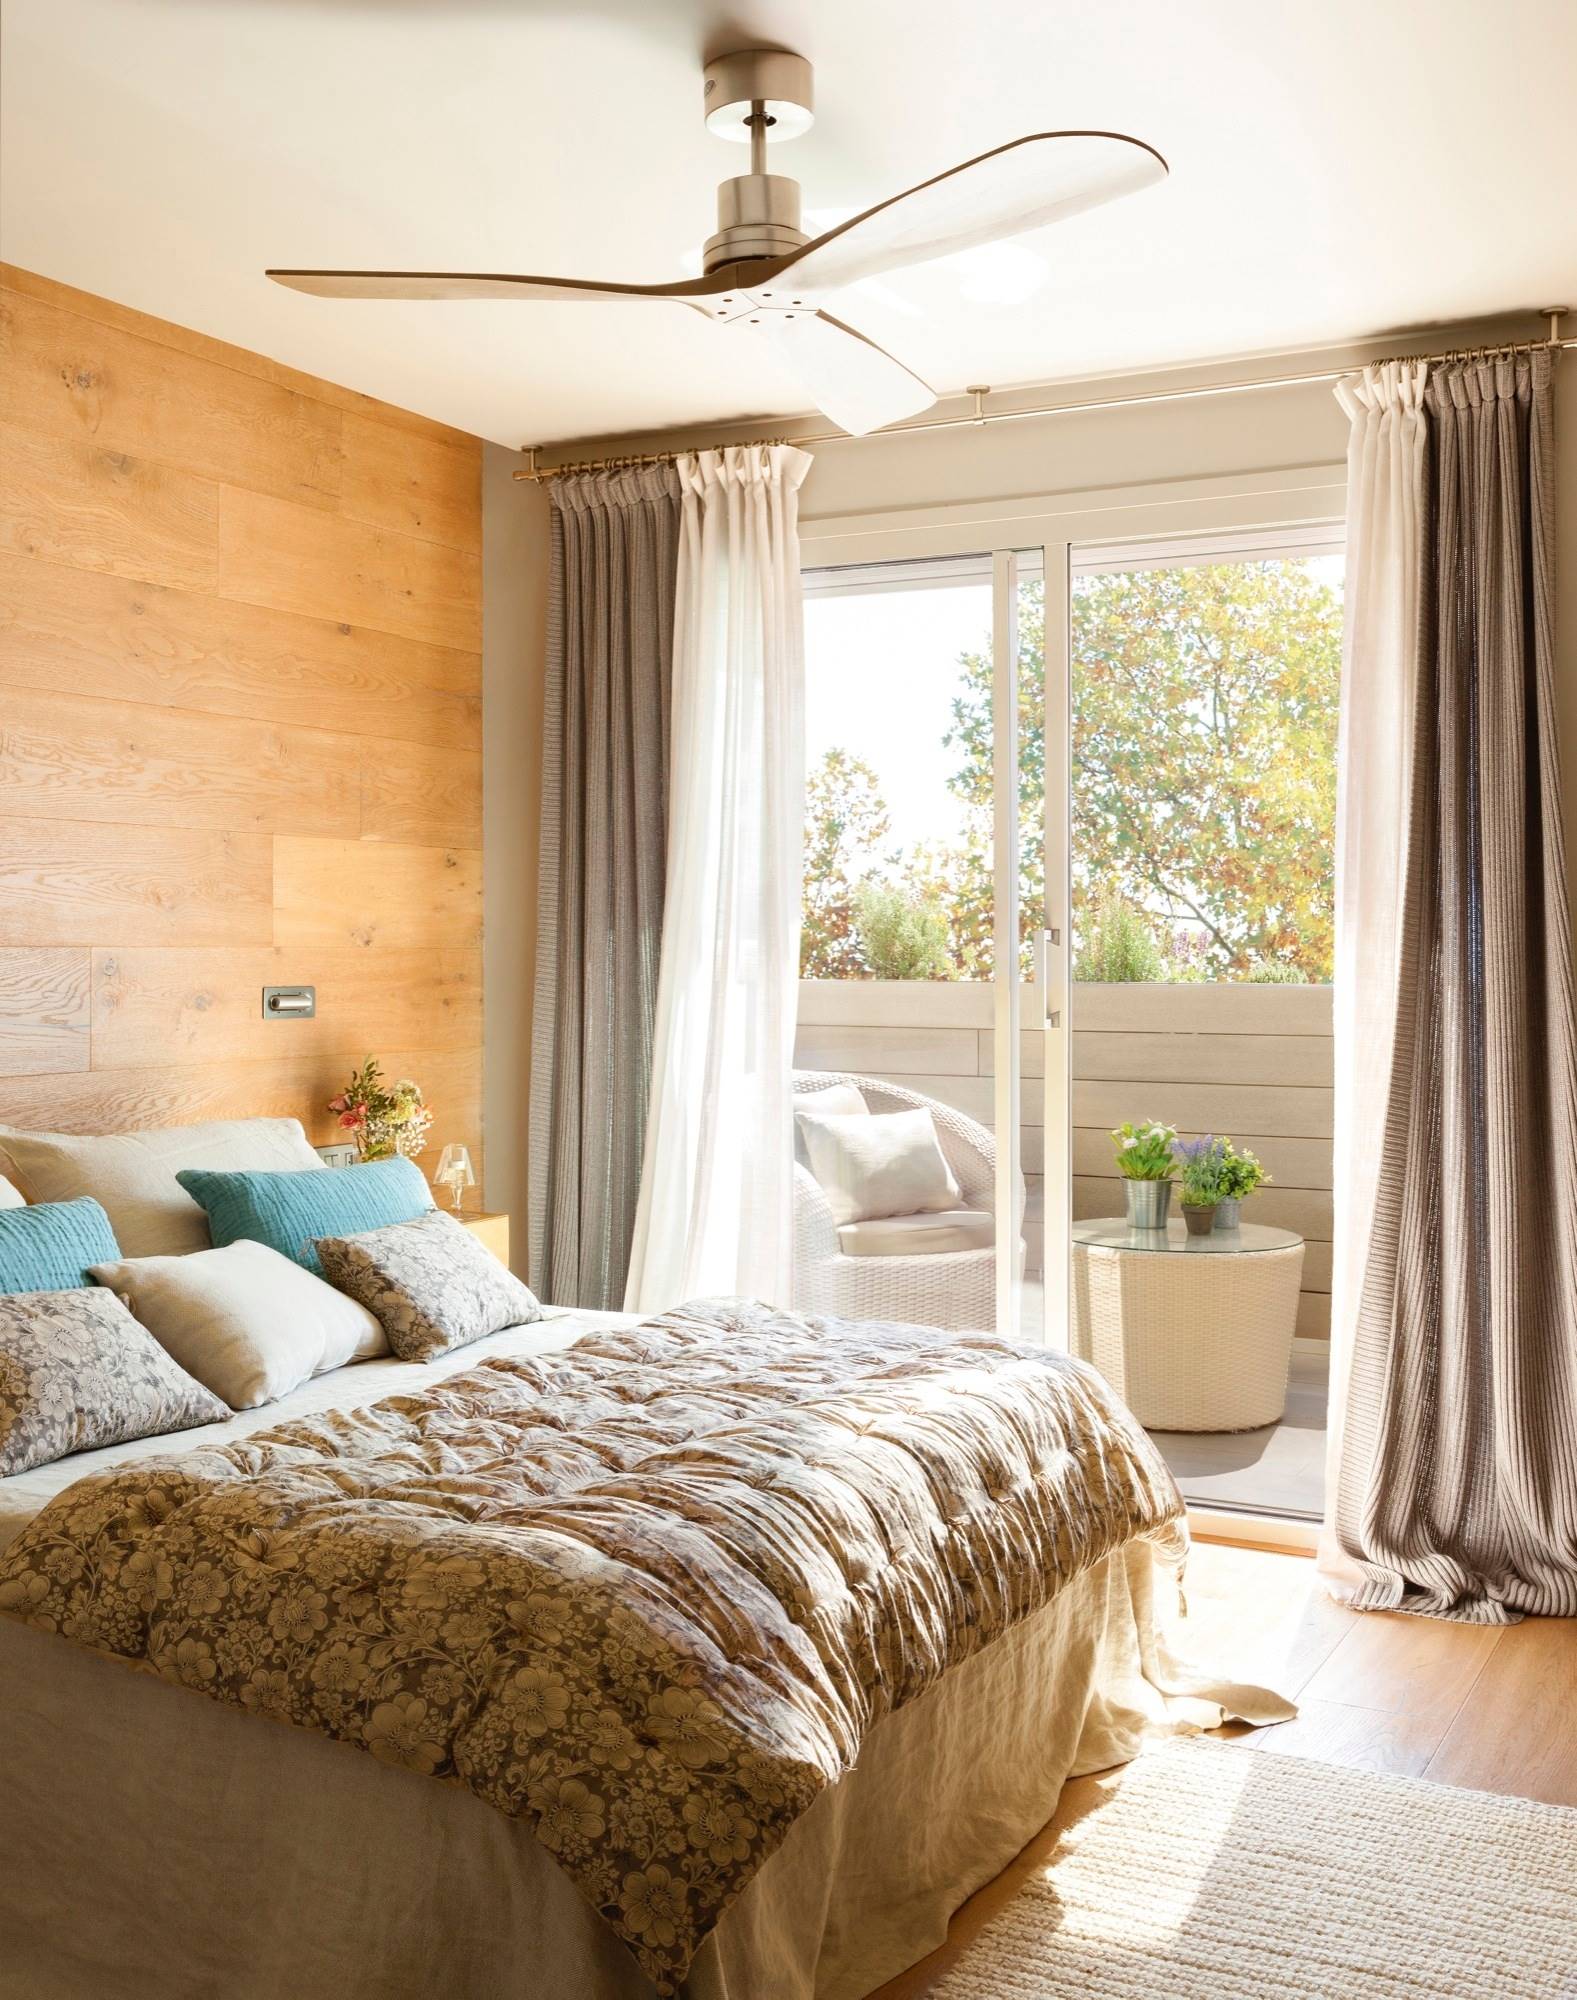 Dormitorio con pared revestida de madera y terraza. 00406261 fdd91f80